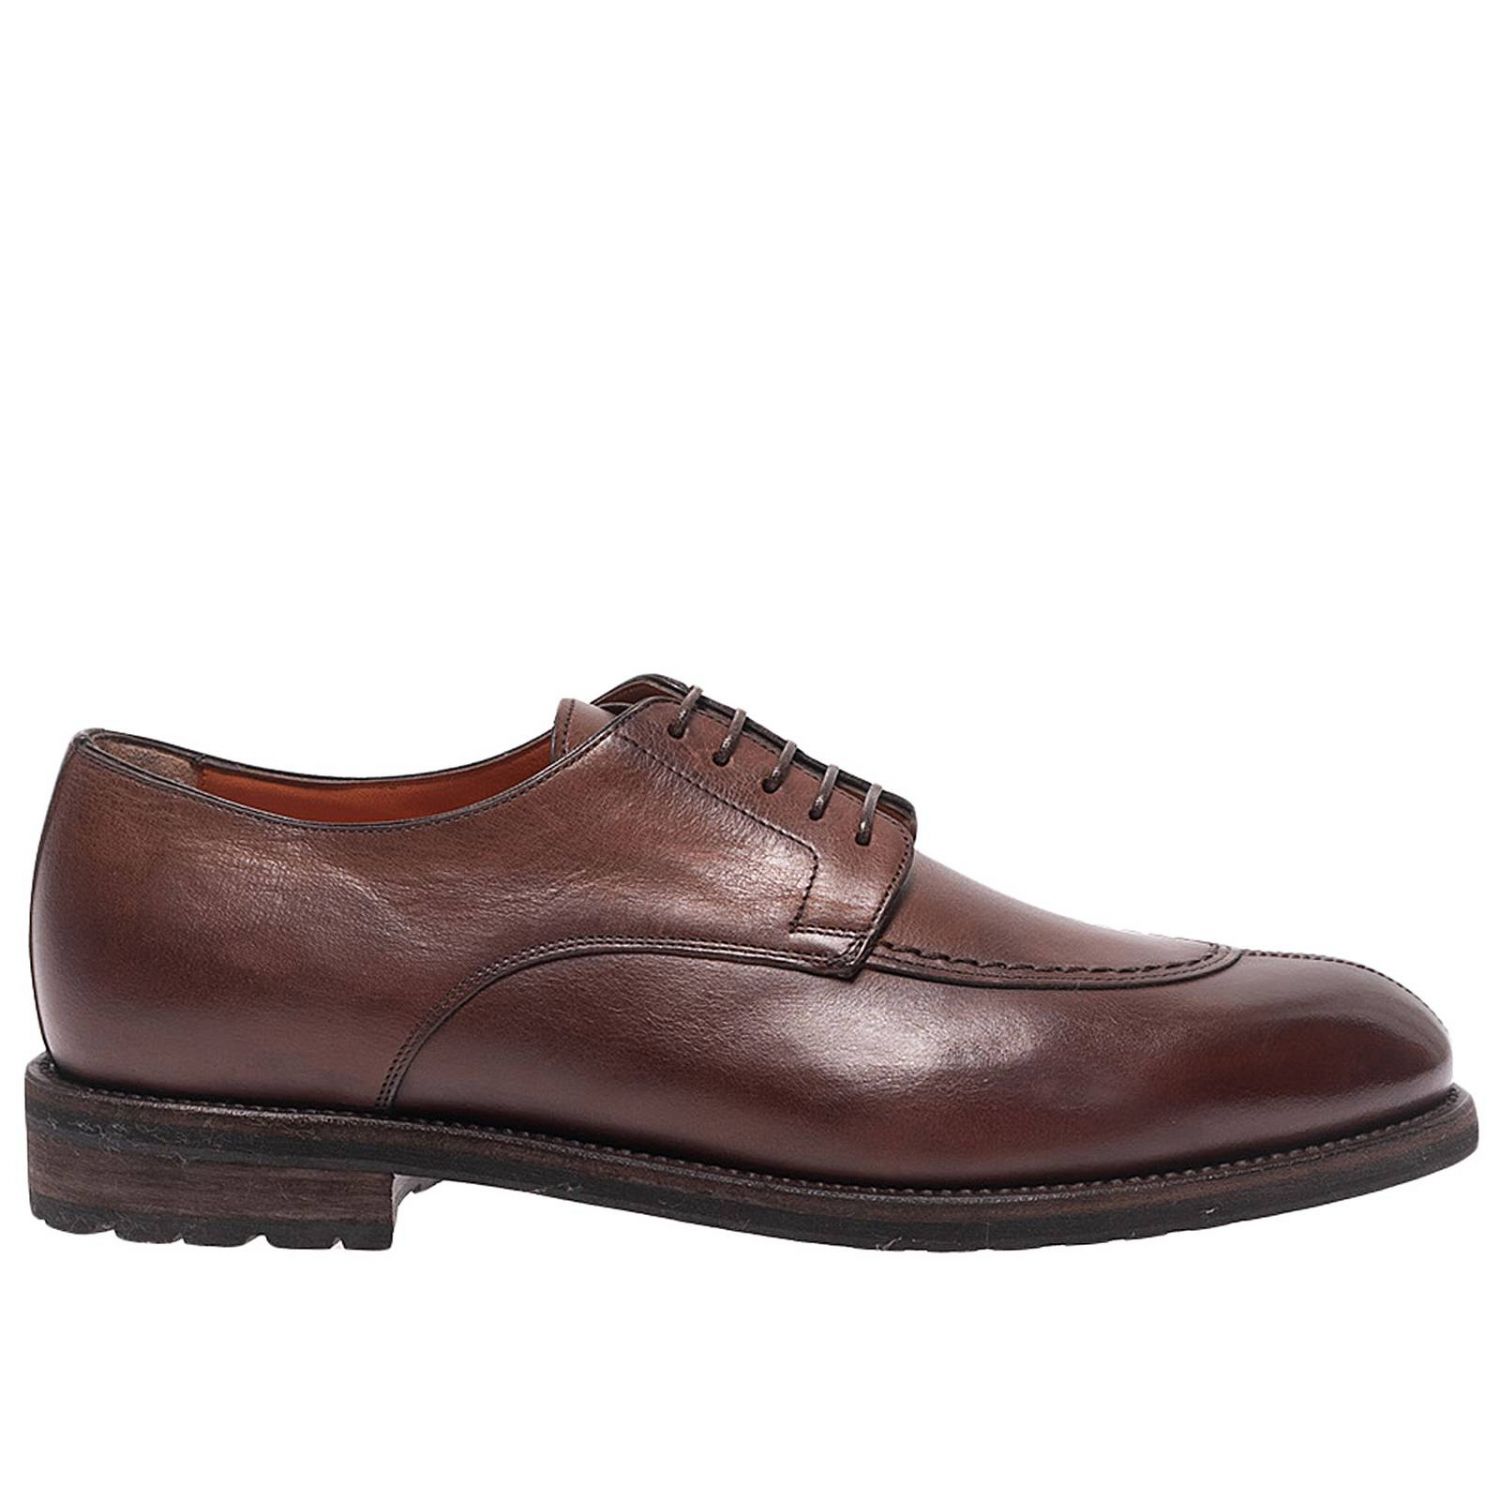 Santoni Outlet: brogue shoes for men - Brown | Santoni brogue shoes ...